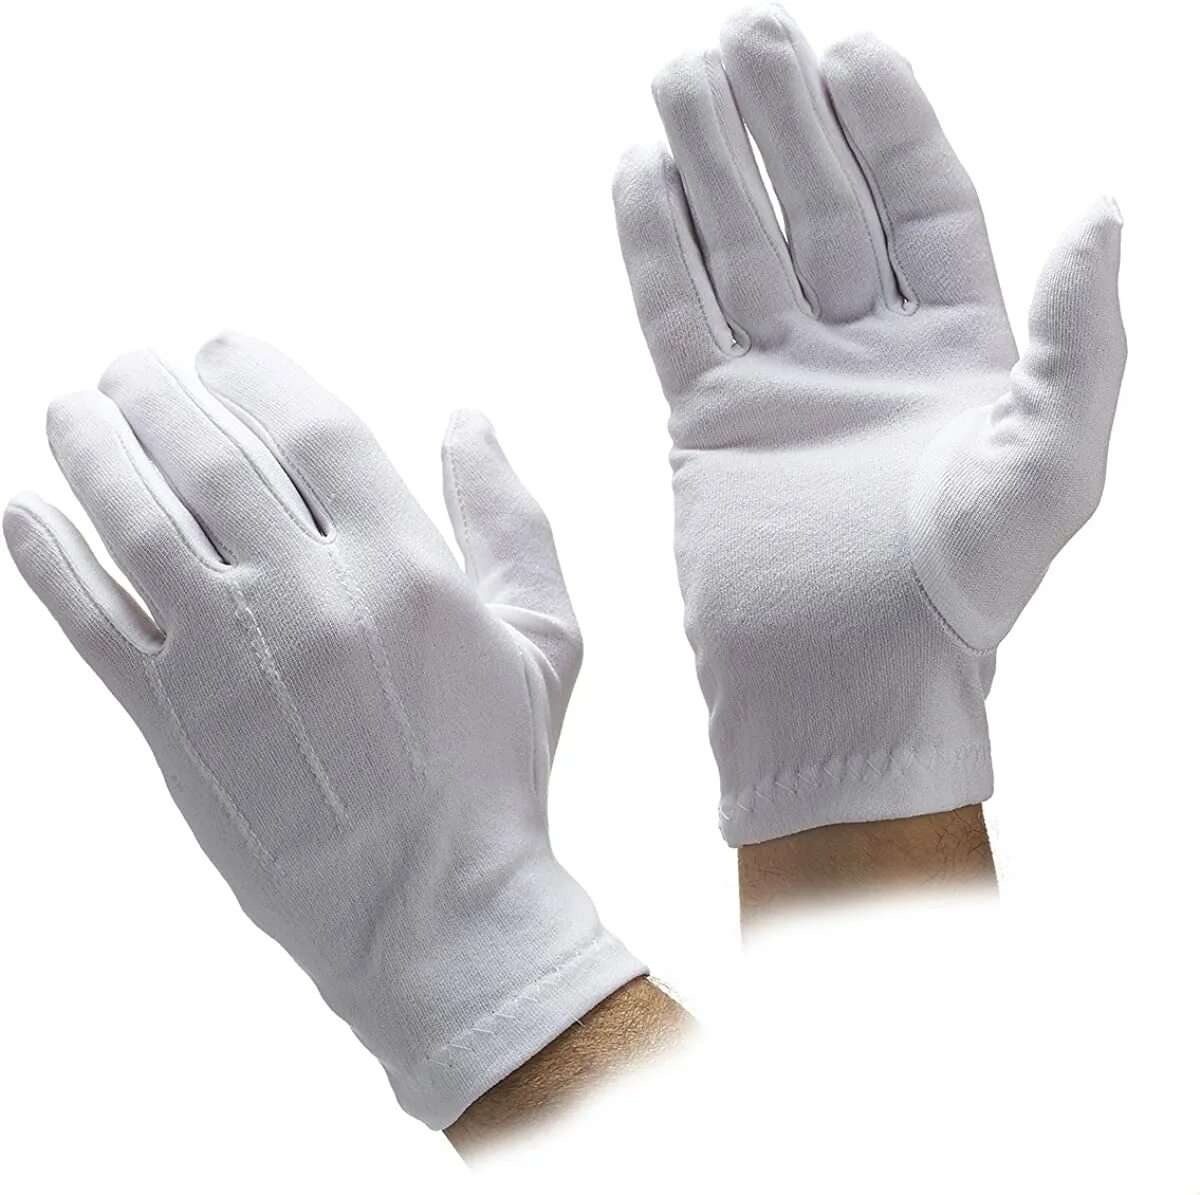 24 белых перчатки и 20 черных. Белые перчатки на руках. Белые кожаные перчатки. Перчатки референс. Перчатки рабочие белые.